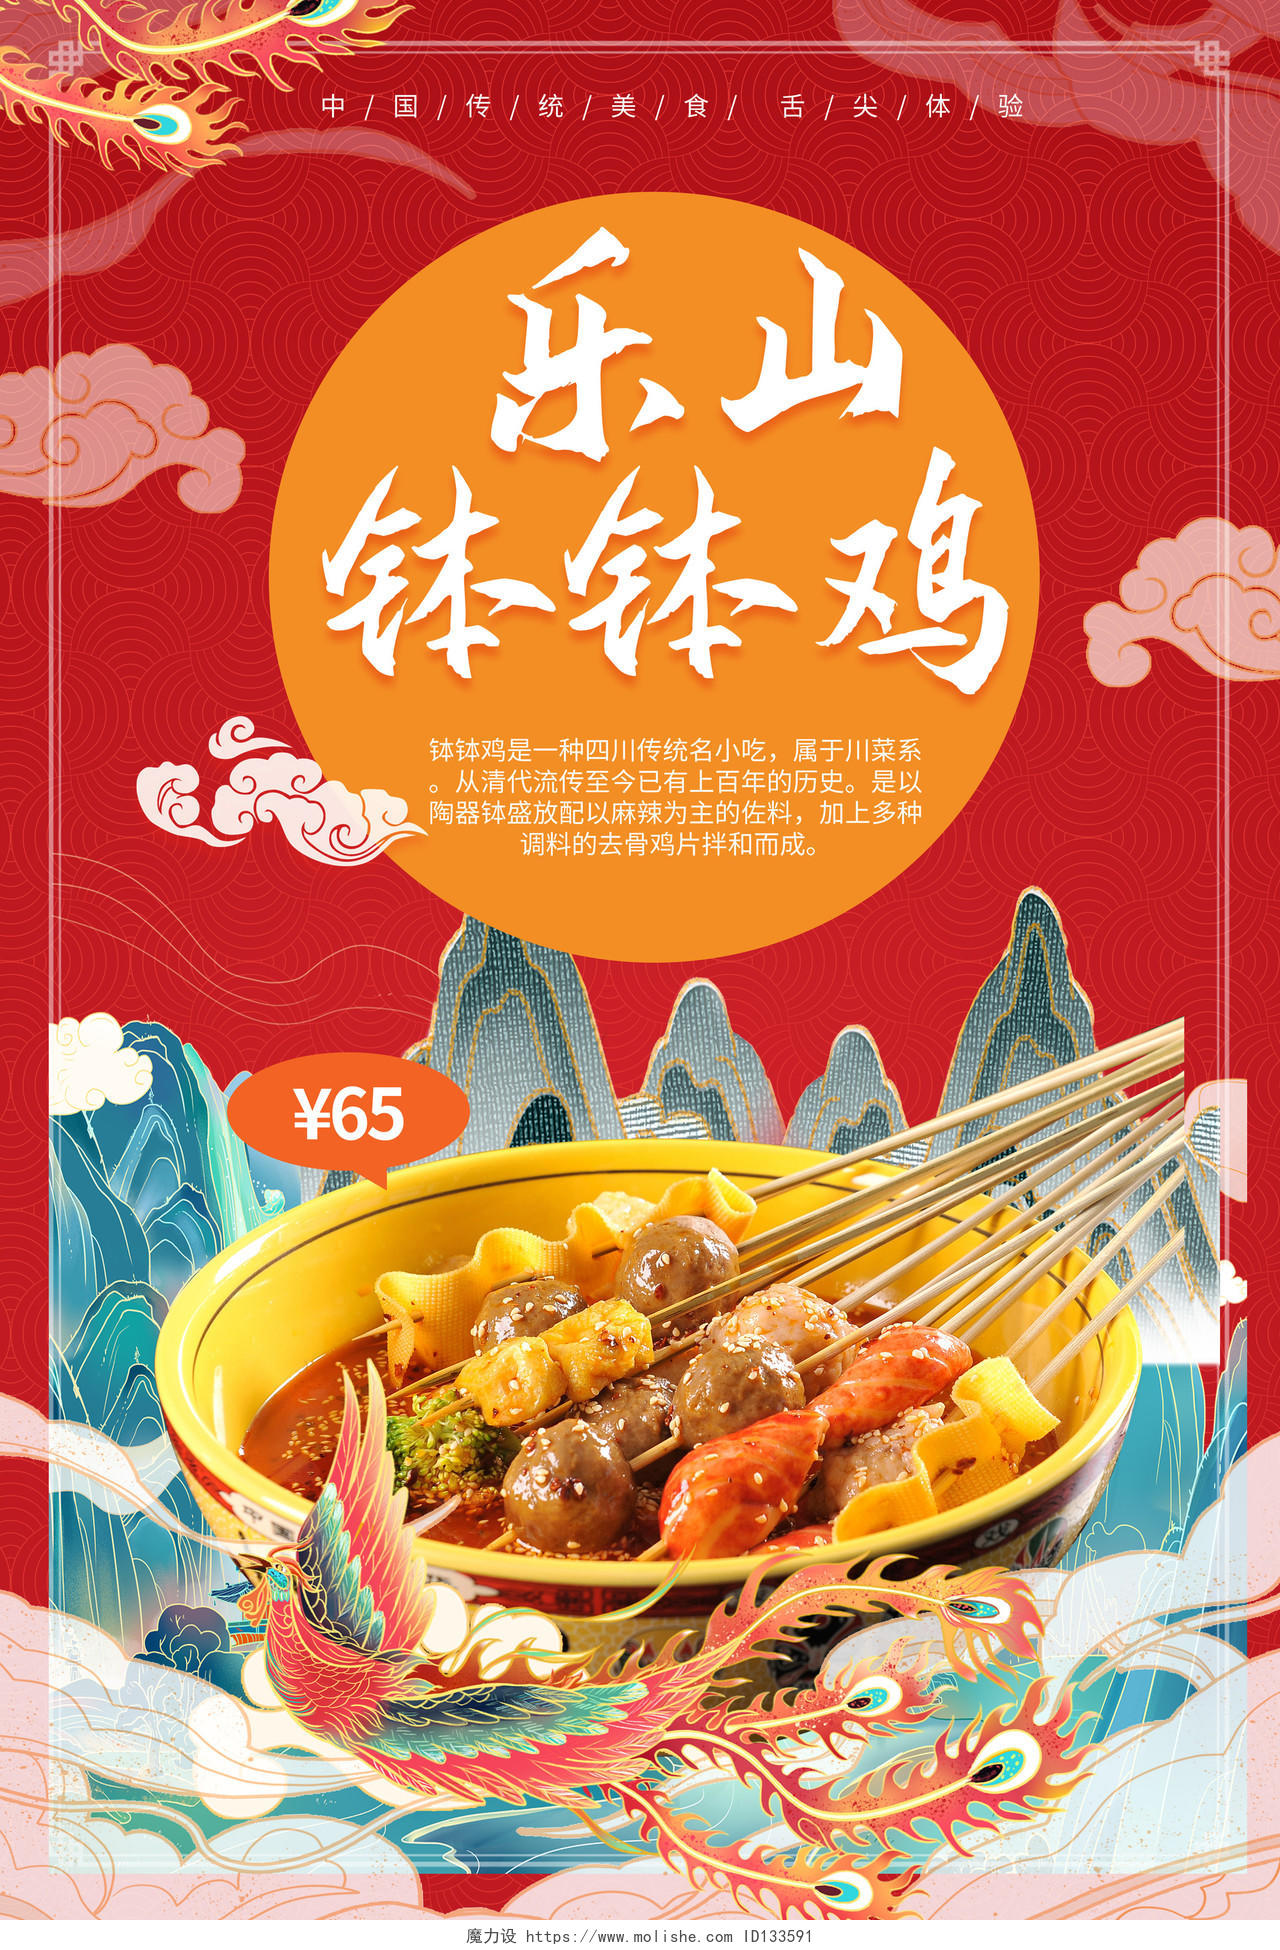 红色背景创意国潮风乐山钵钵鸡促销宣传海报设计钵钵鸡美食